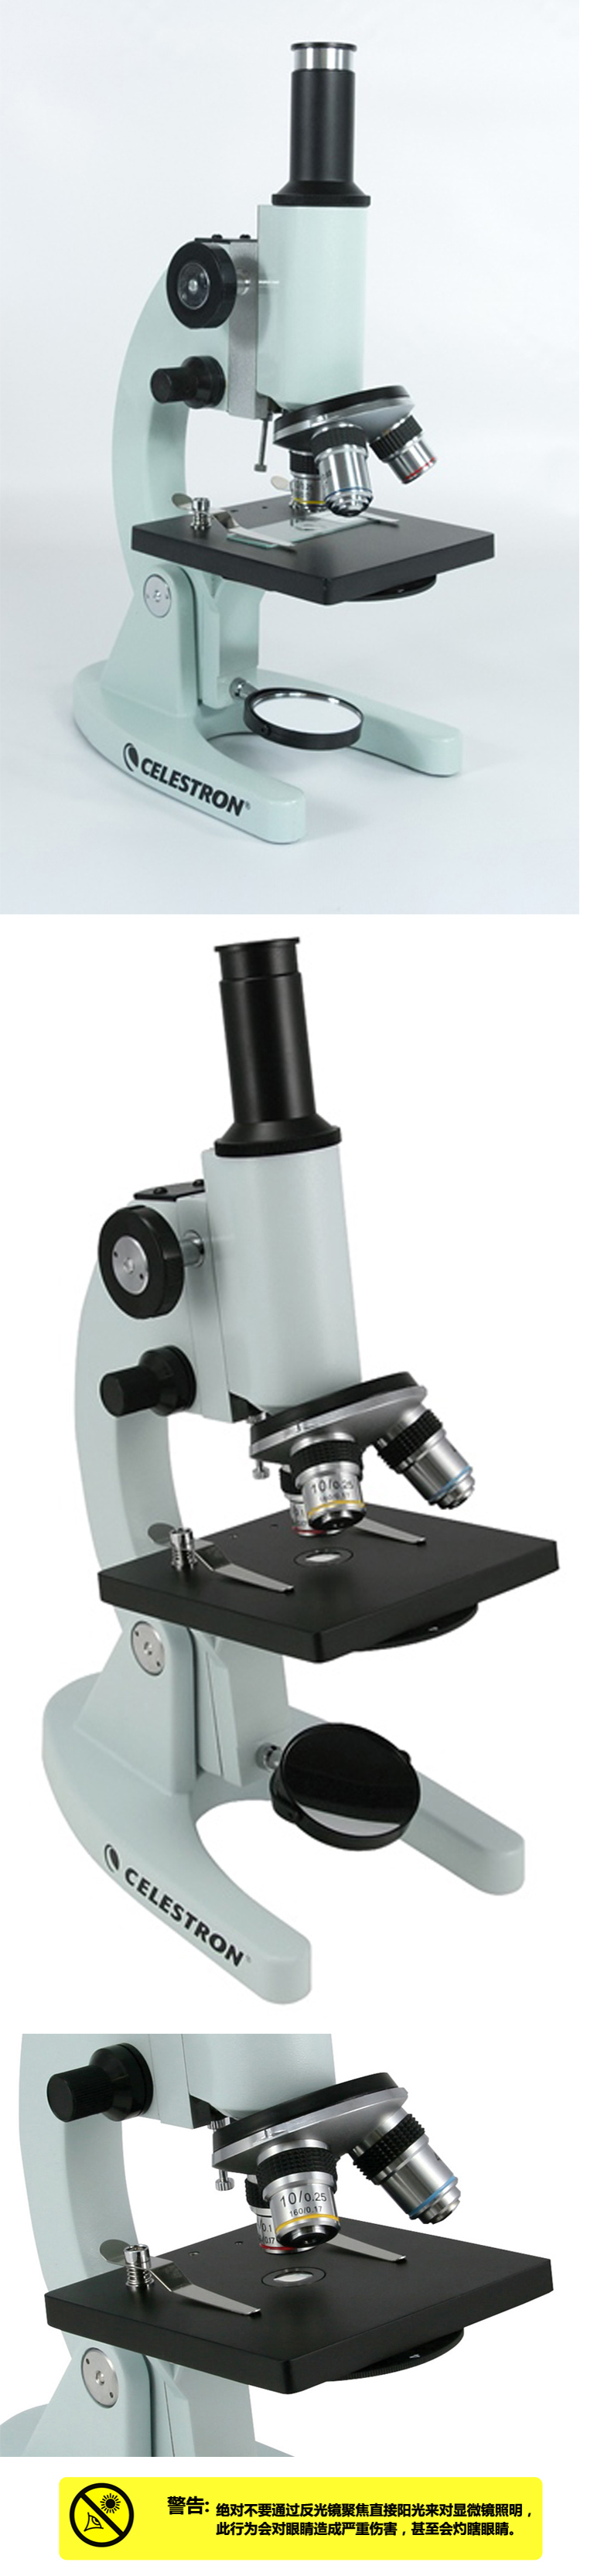 400x高倍学生实验室生物显微镜 44102 支架式固定倍率单筒观测镜